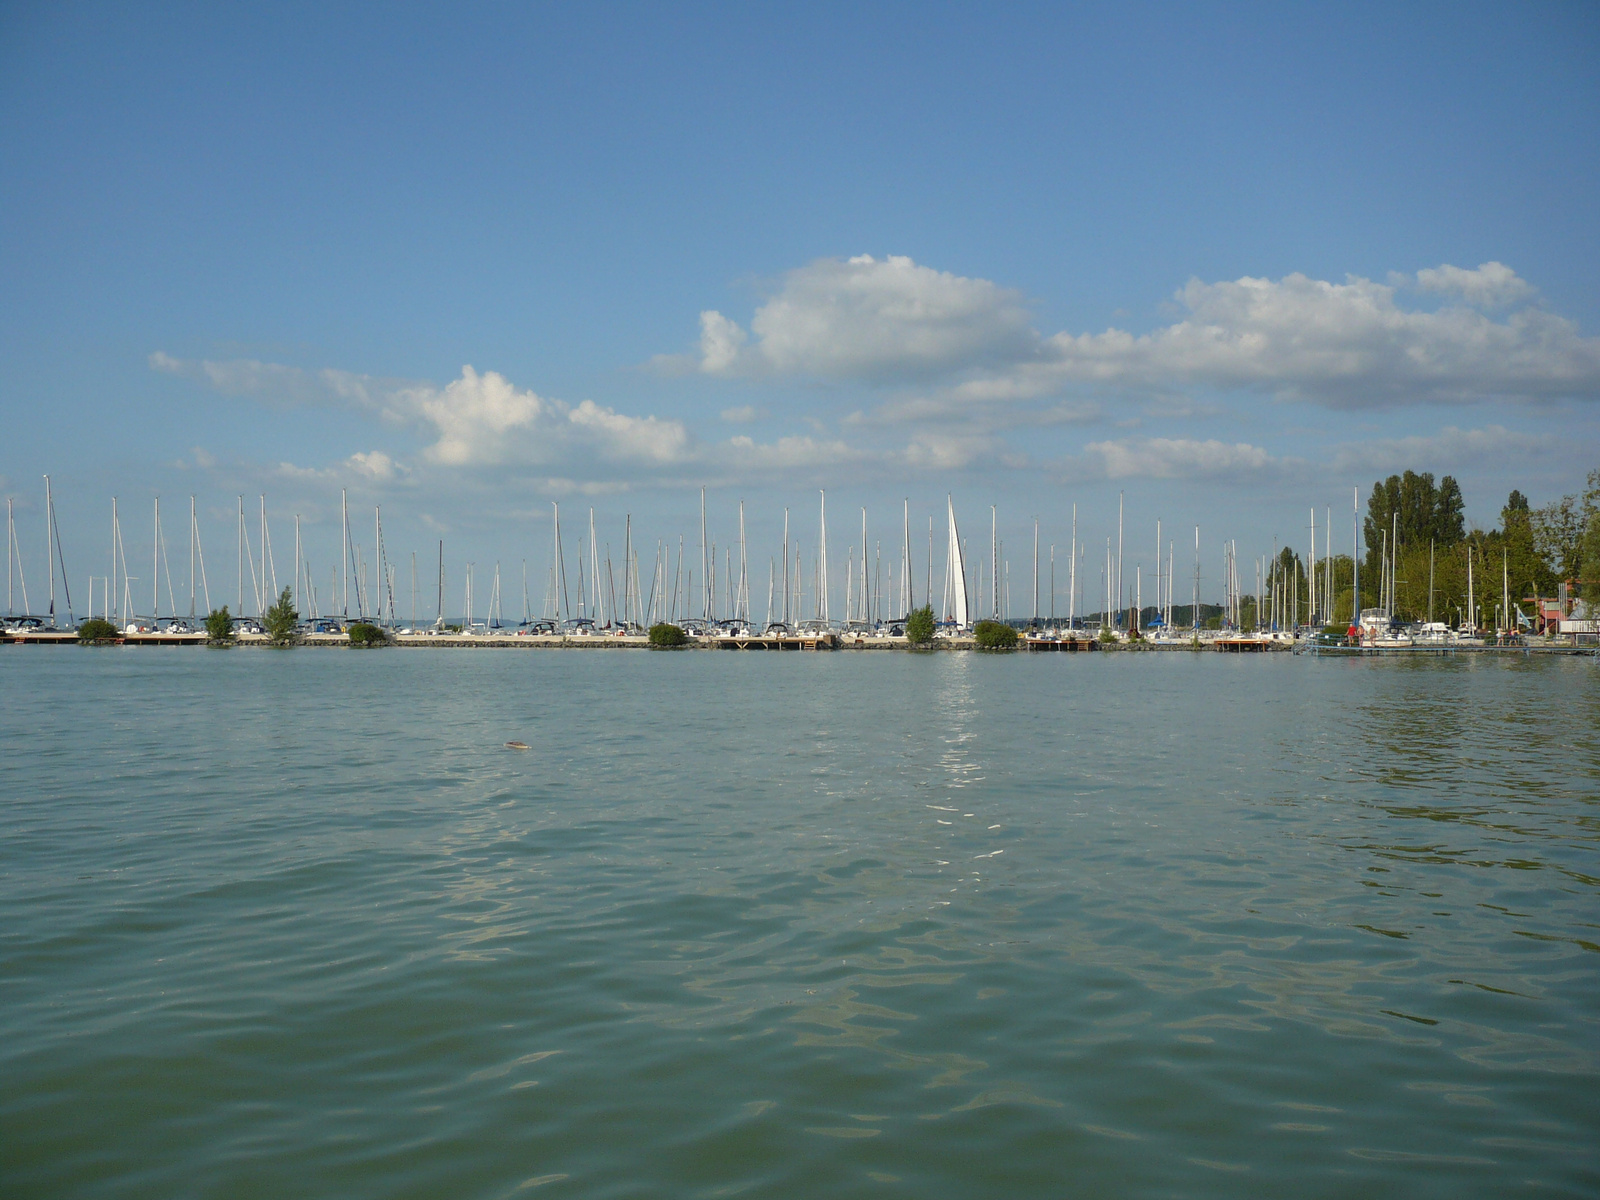 Kikötő- Balatonlelle